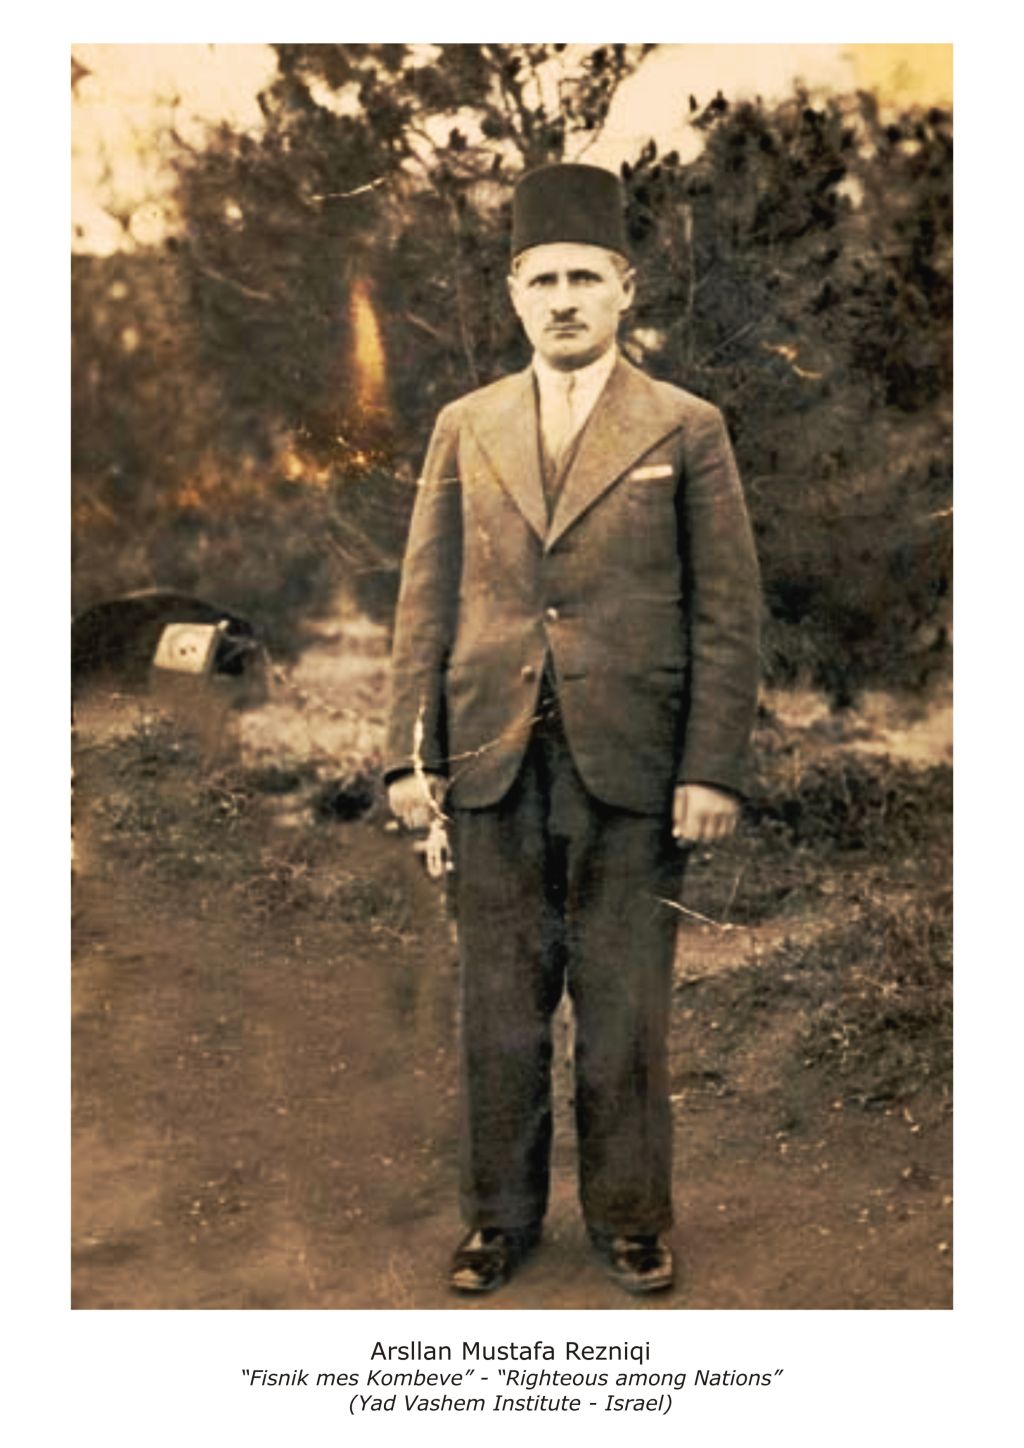 Arslan Mustafa Rezniqi (Foto: archivo Yad Vashem)  ©